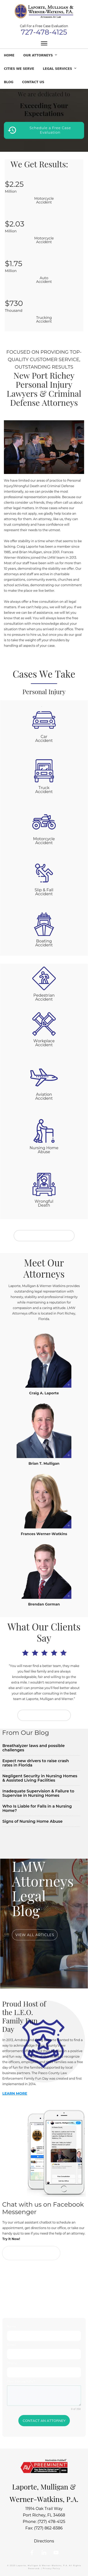 Proly Laporte & Mulligan PA - Port Richey FL Lawyers